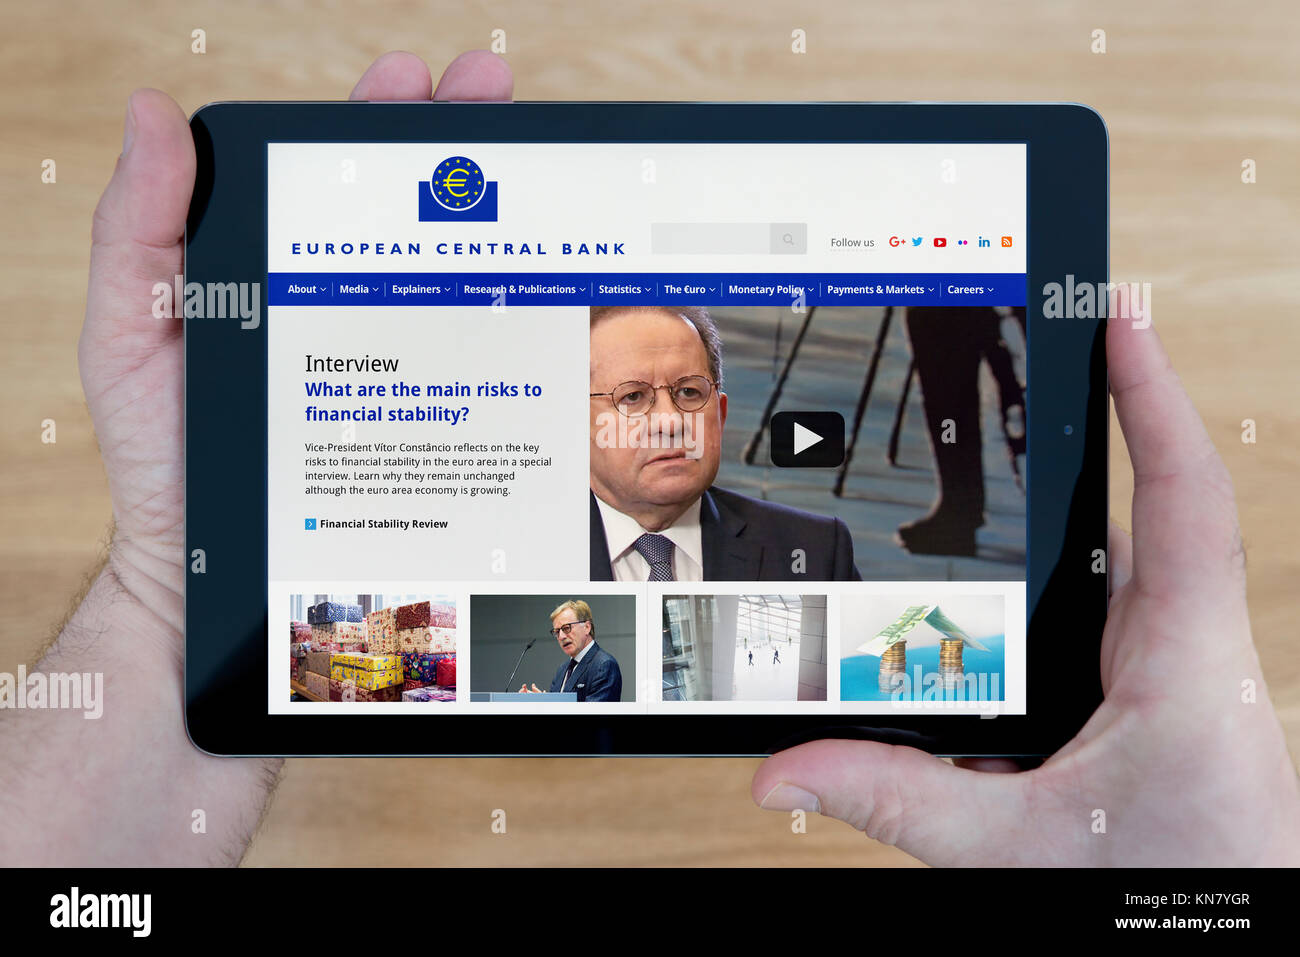 Un hombre se ve en el sitio web del Banco Central Europeo en su iPad dispositivo tablet, disparó contra una mesa de madera fondo superior (uso Editorial solamente) Foto de stock